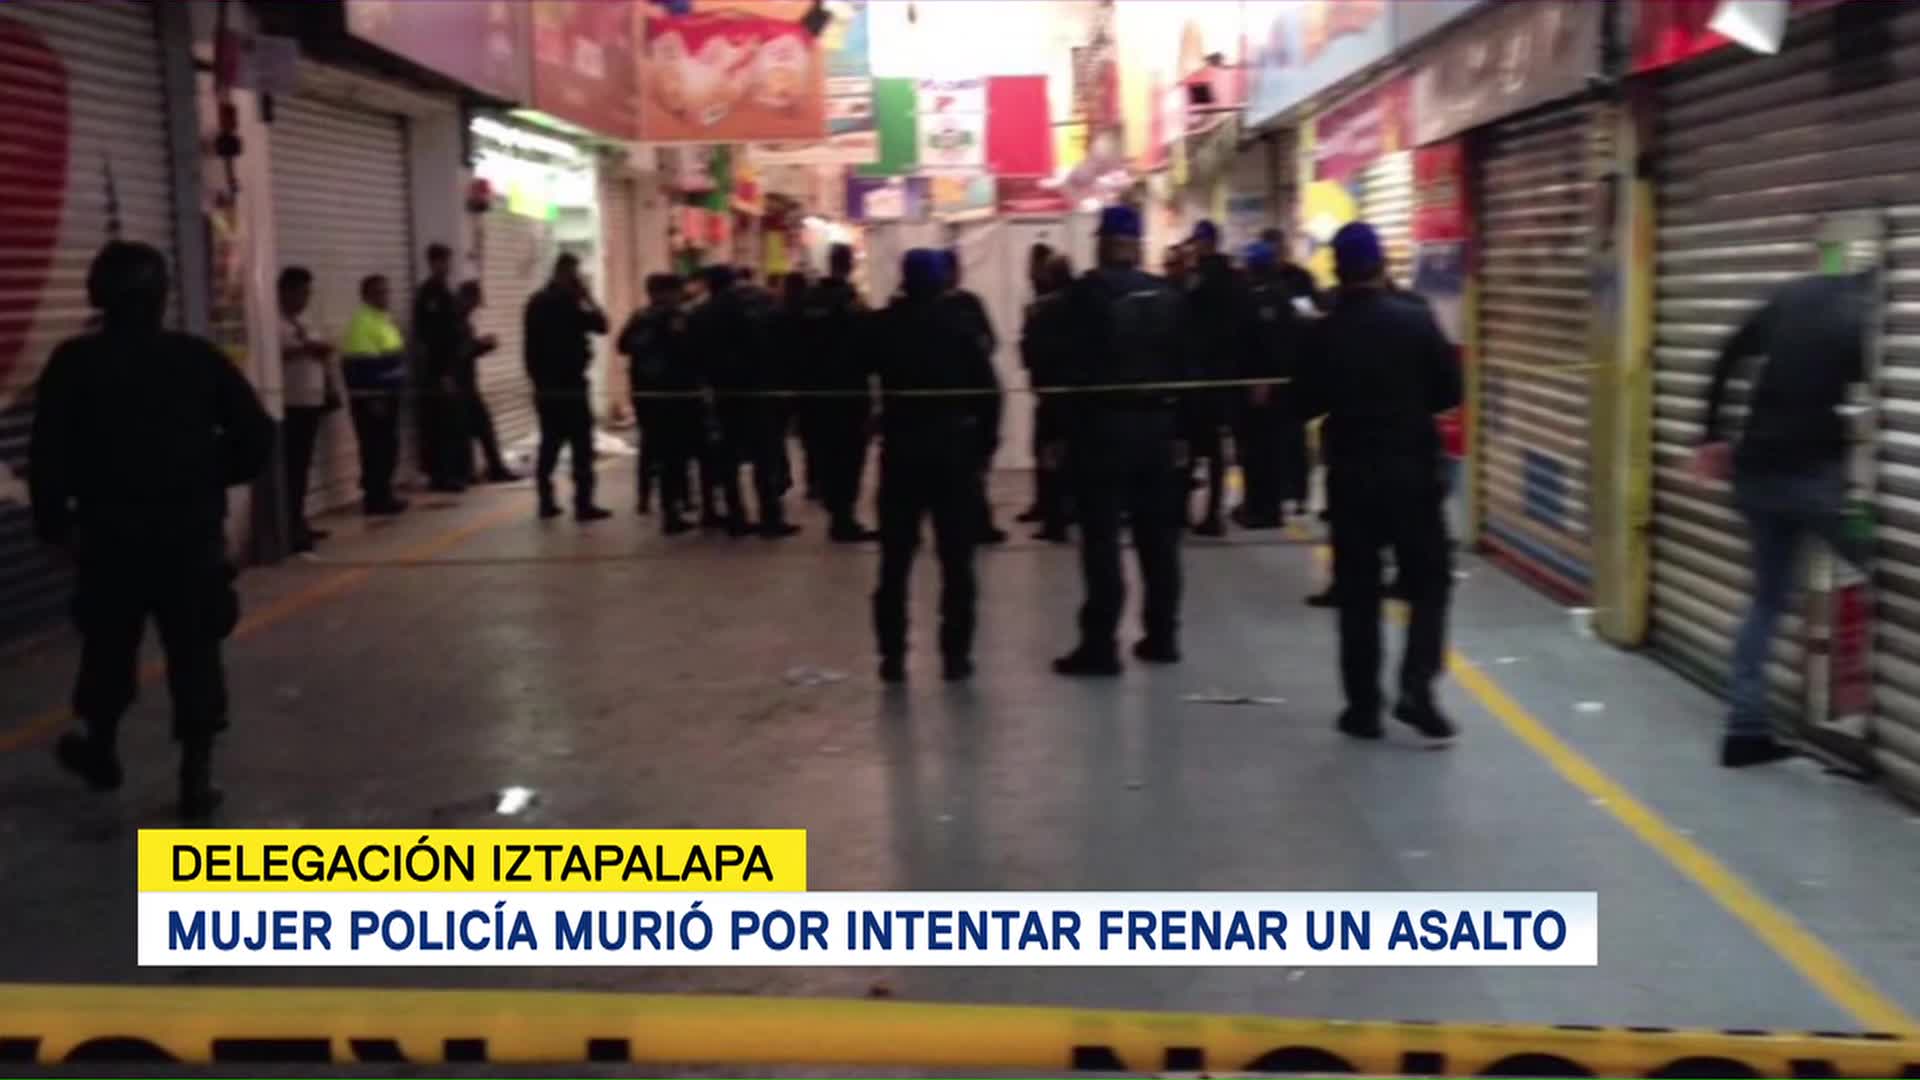 Mujer policía murió por intentar frenar un asalto en Iztapalapa